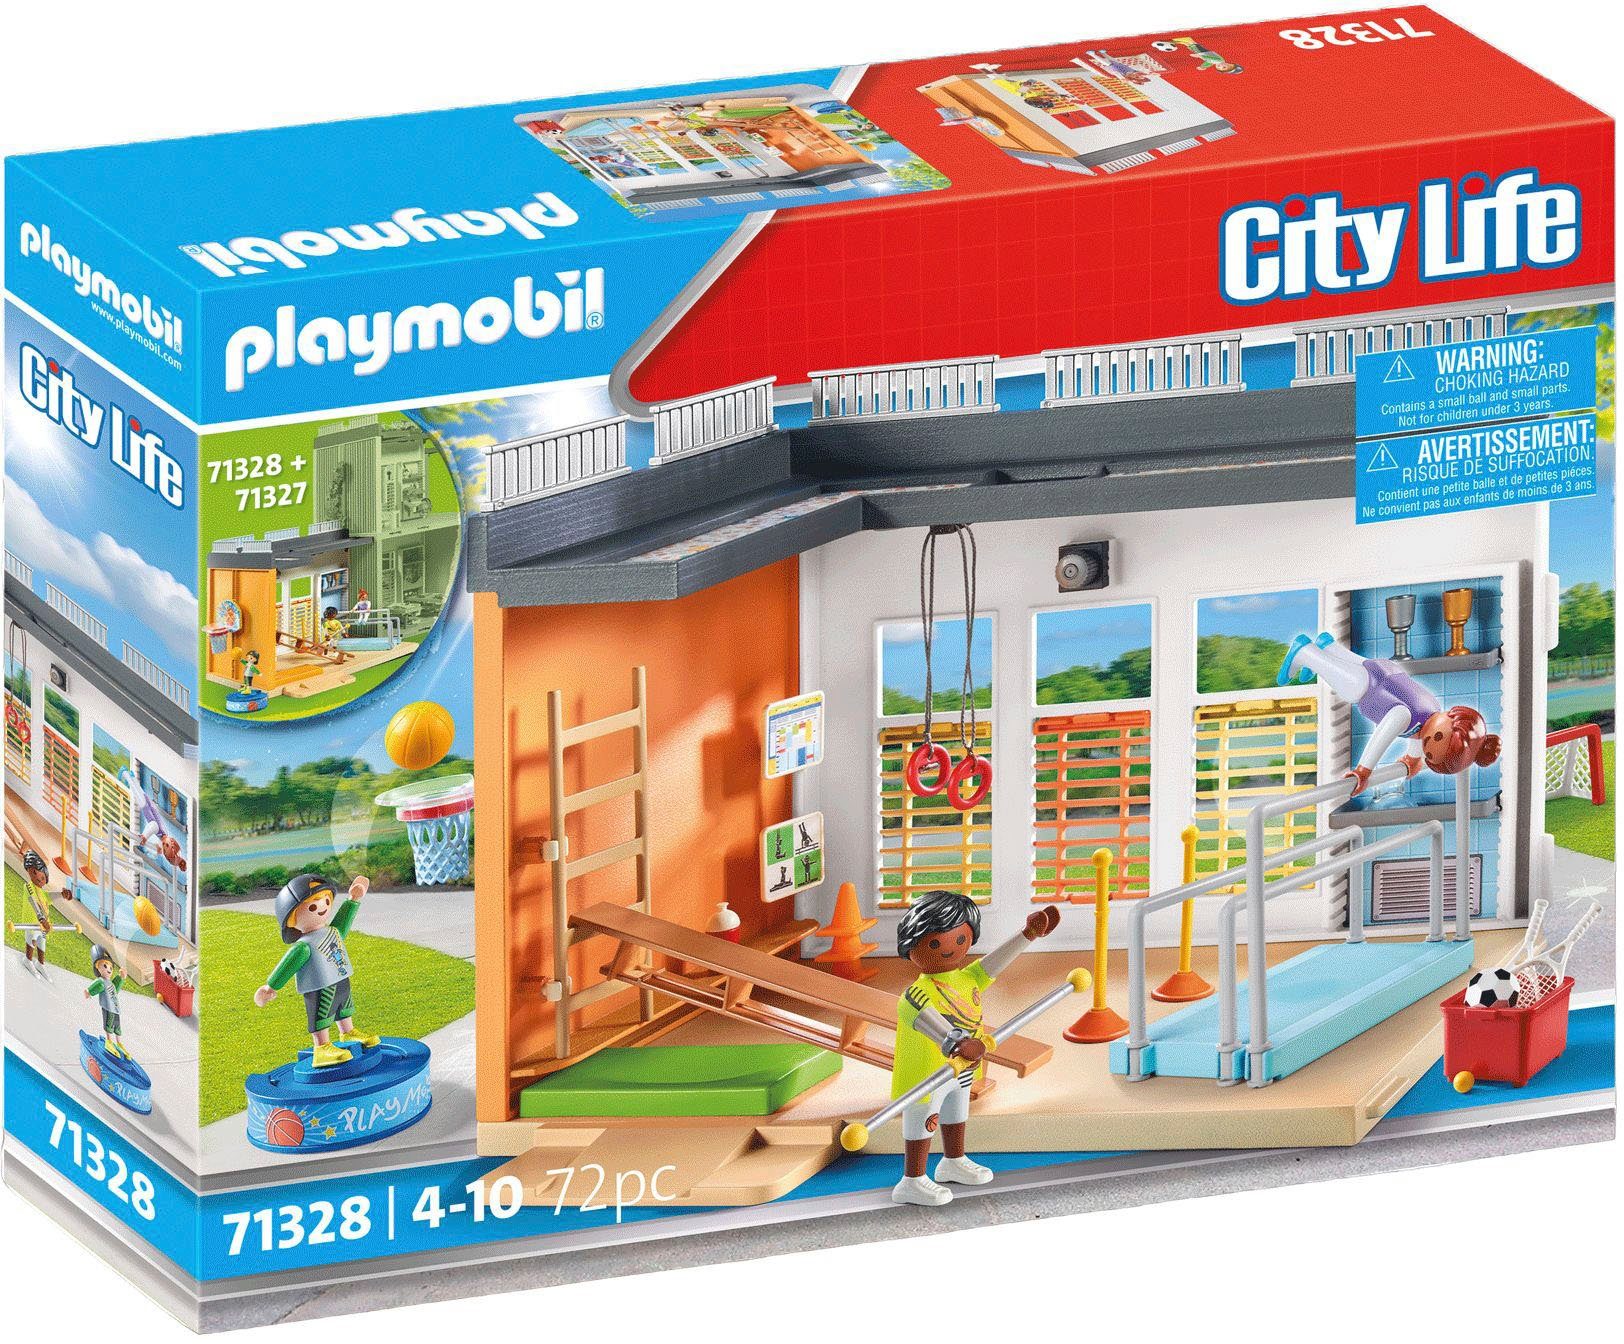 Playmobil® Konstruktions-Spielset Anbau Turnhalle (71328), City Life, (72  St), Made in Germany, Mit vielen tollen Extras für sportlichen Spielspaß